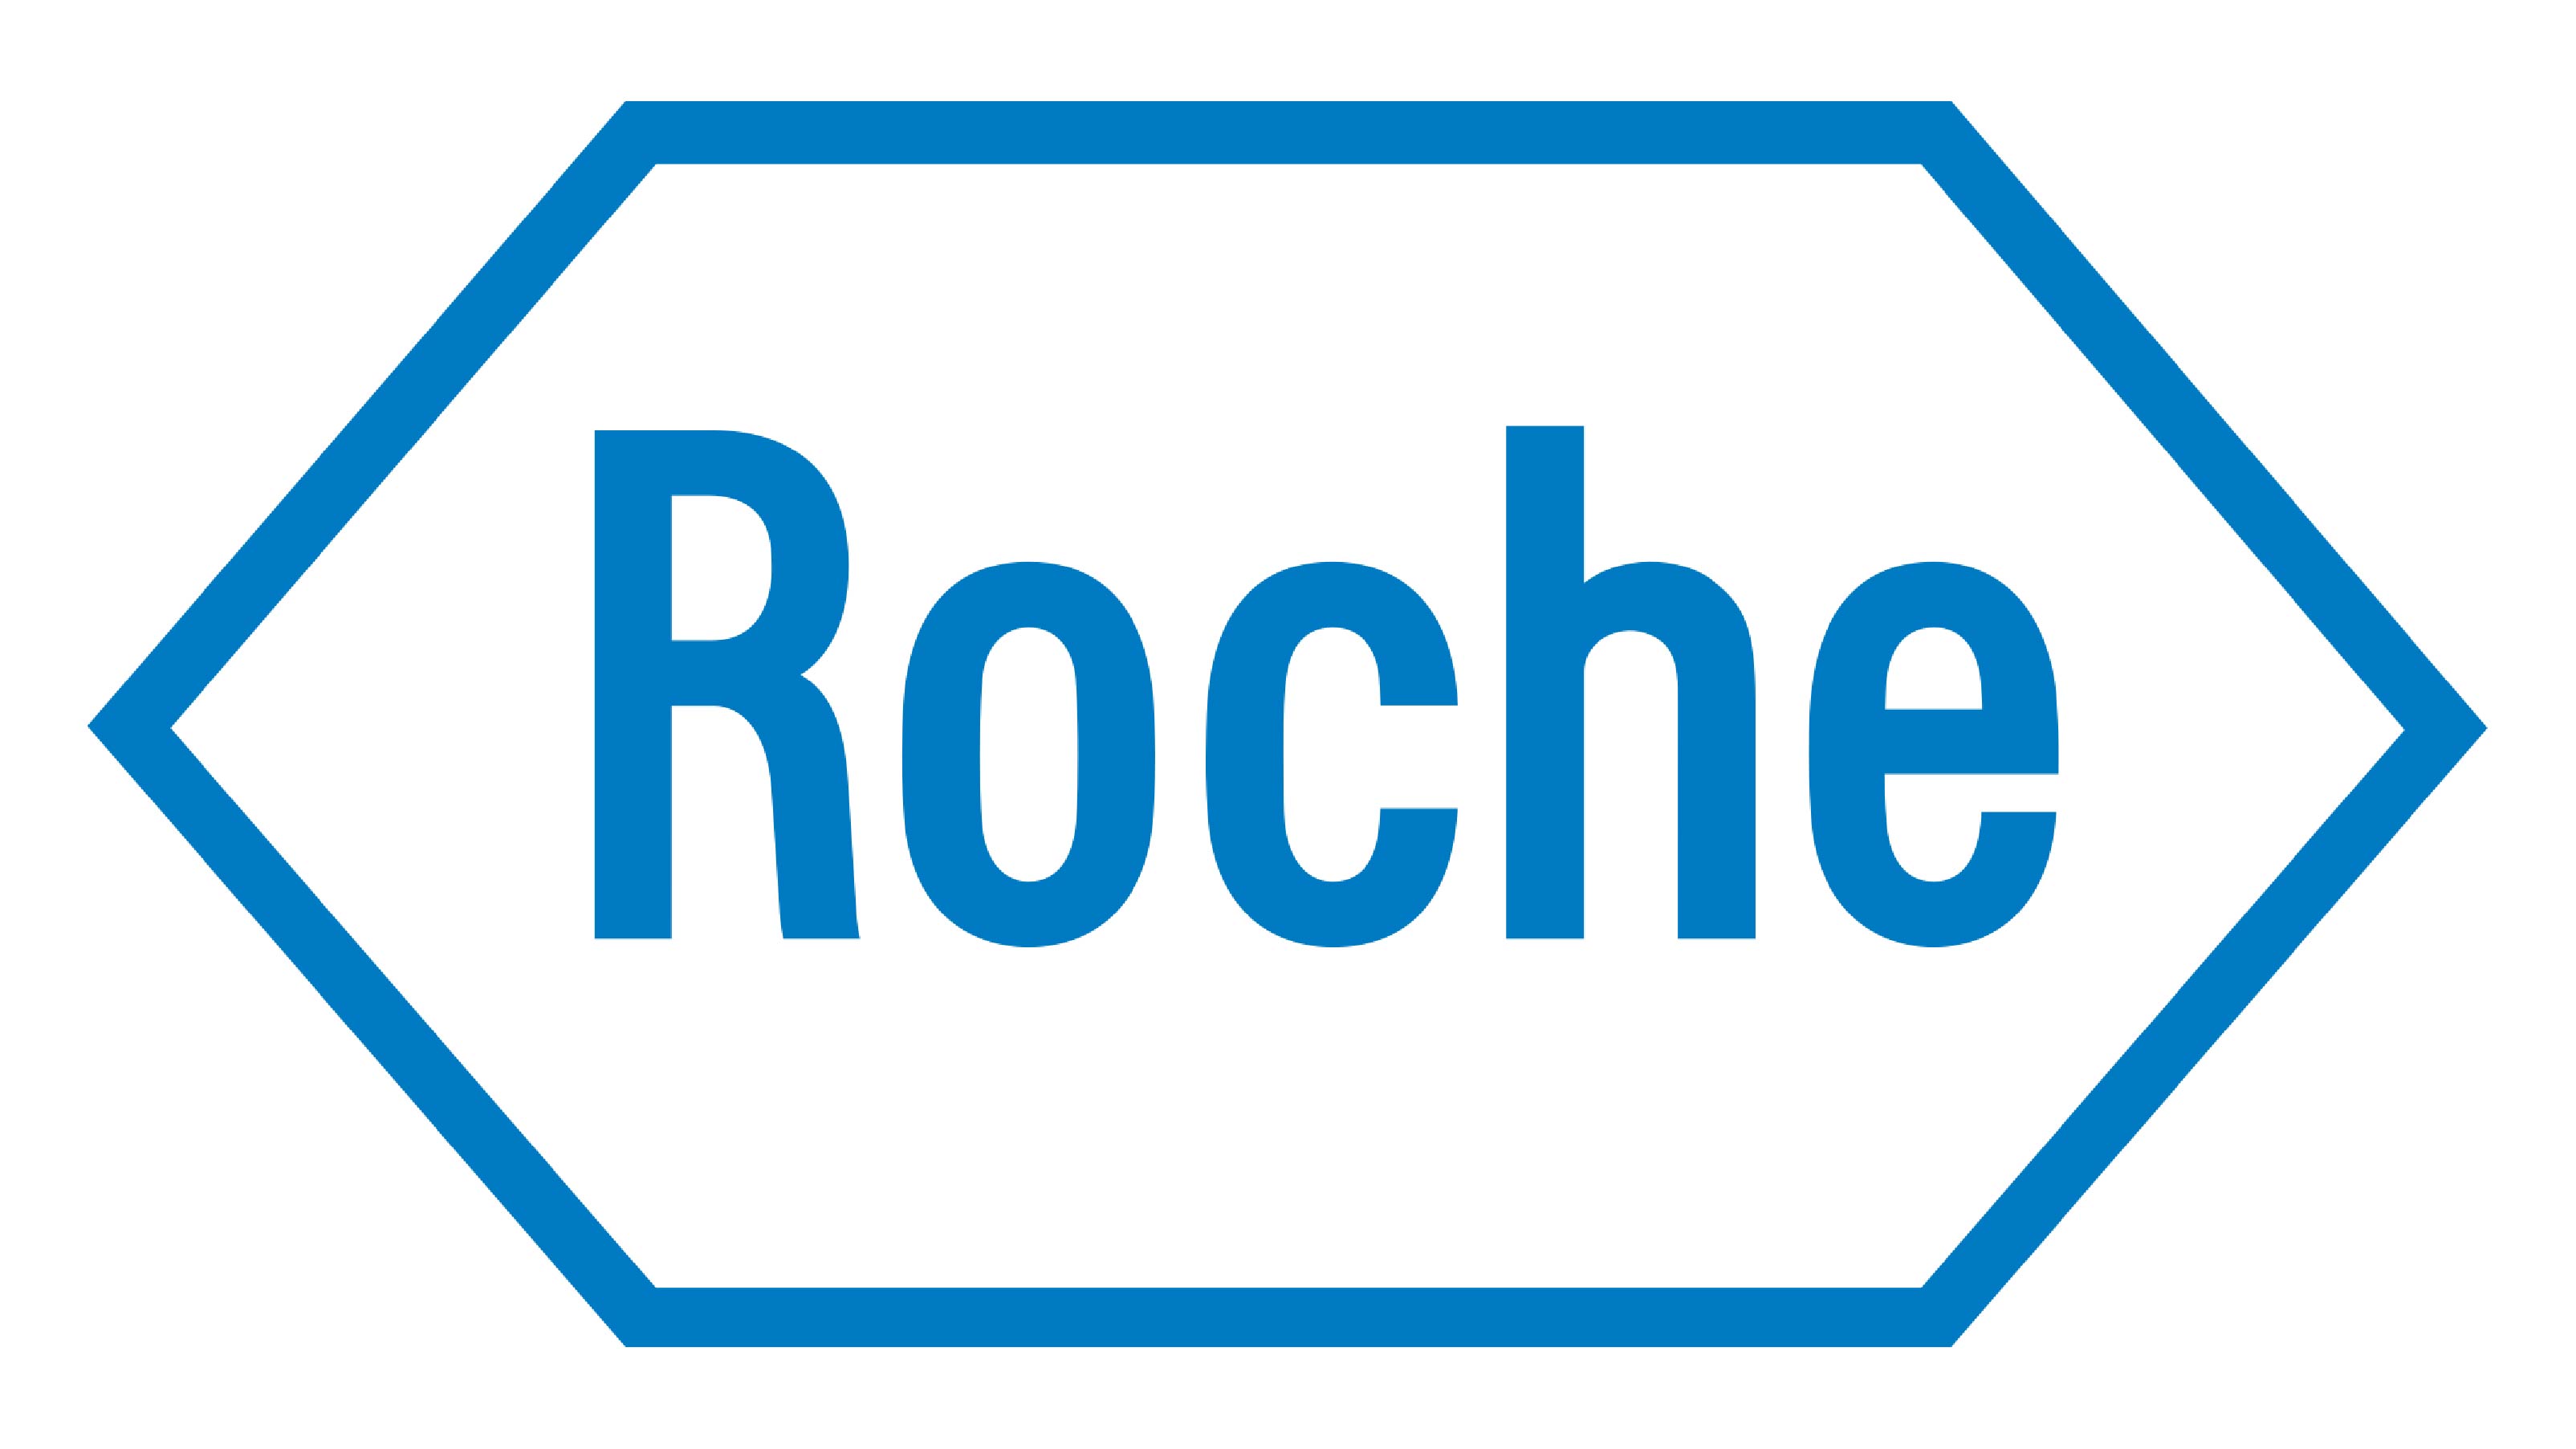 roche-01